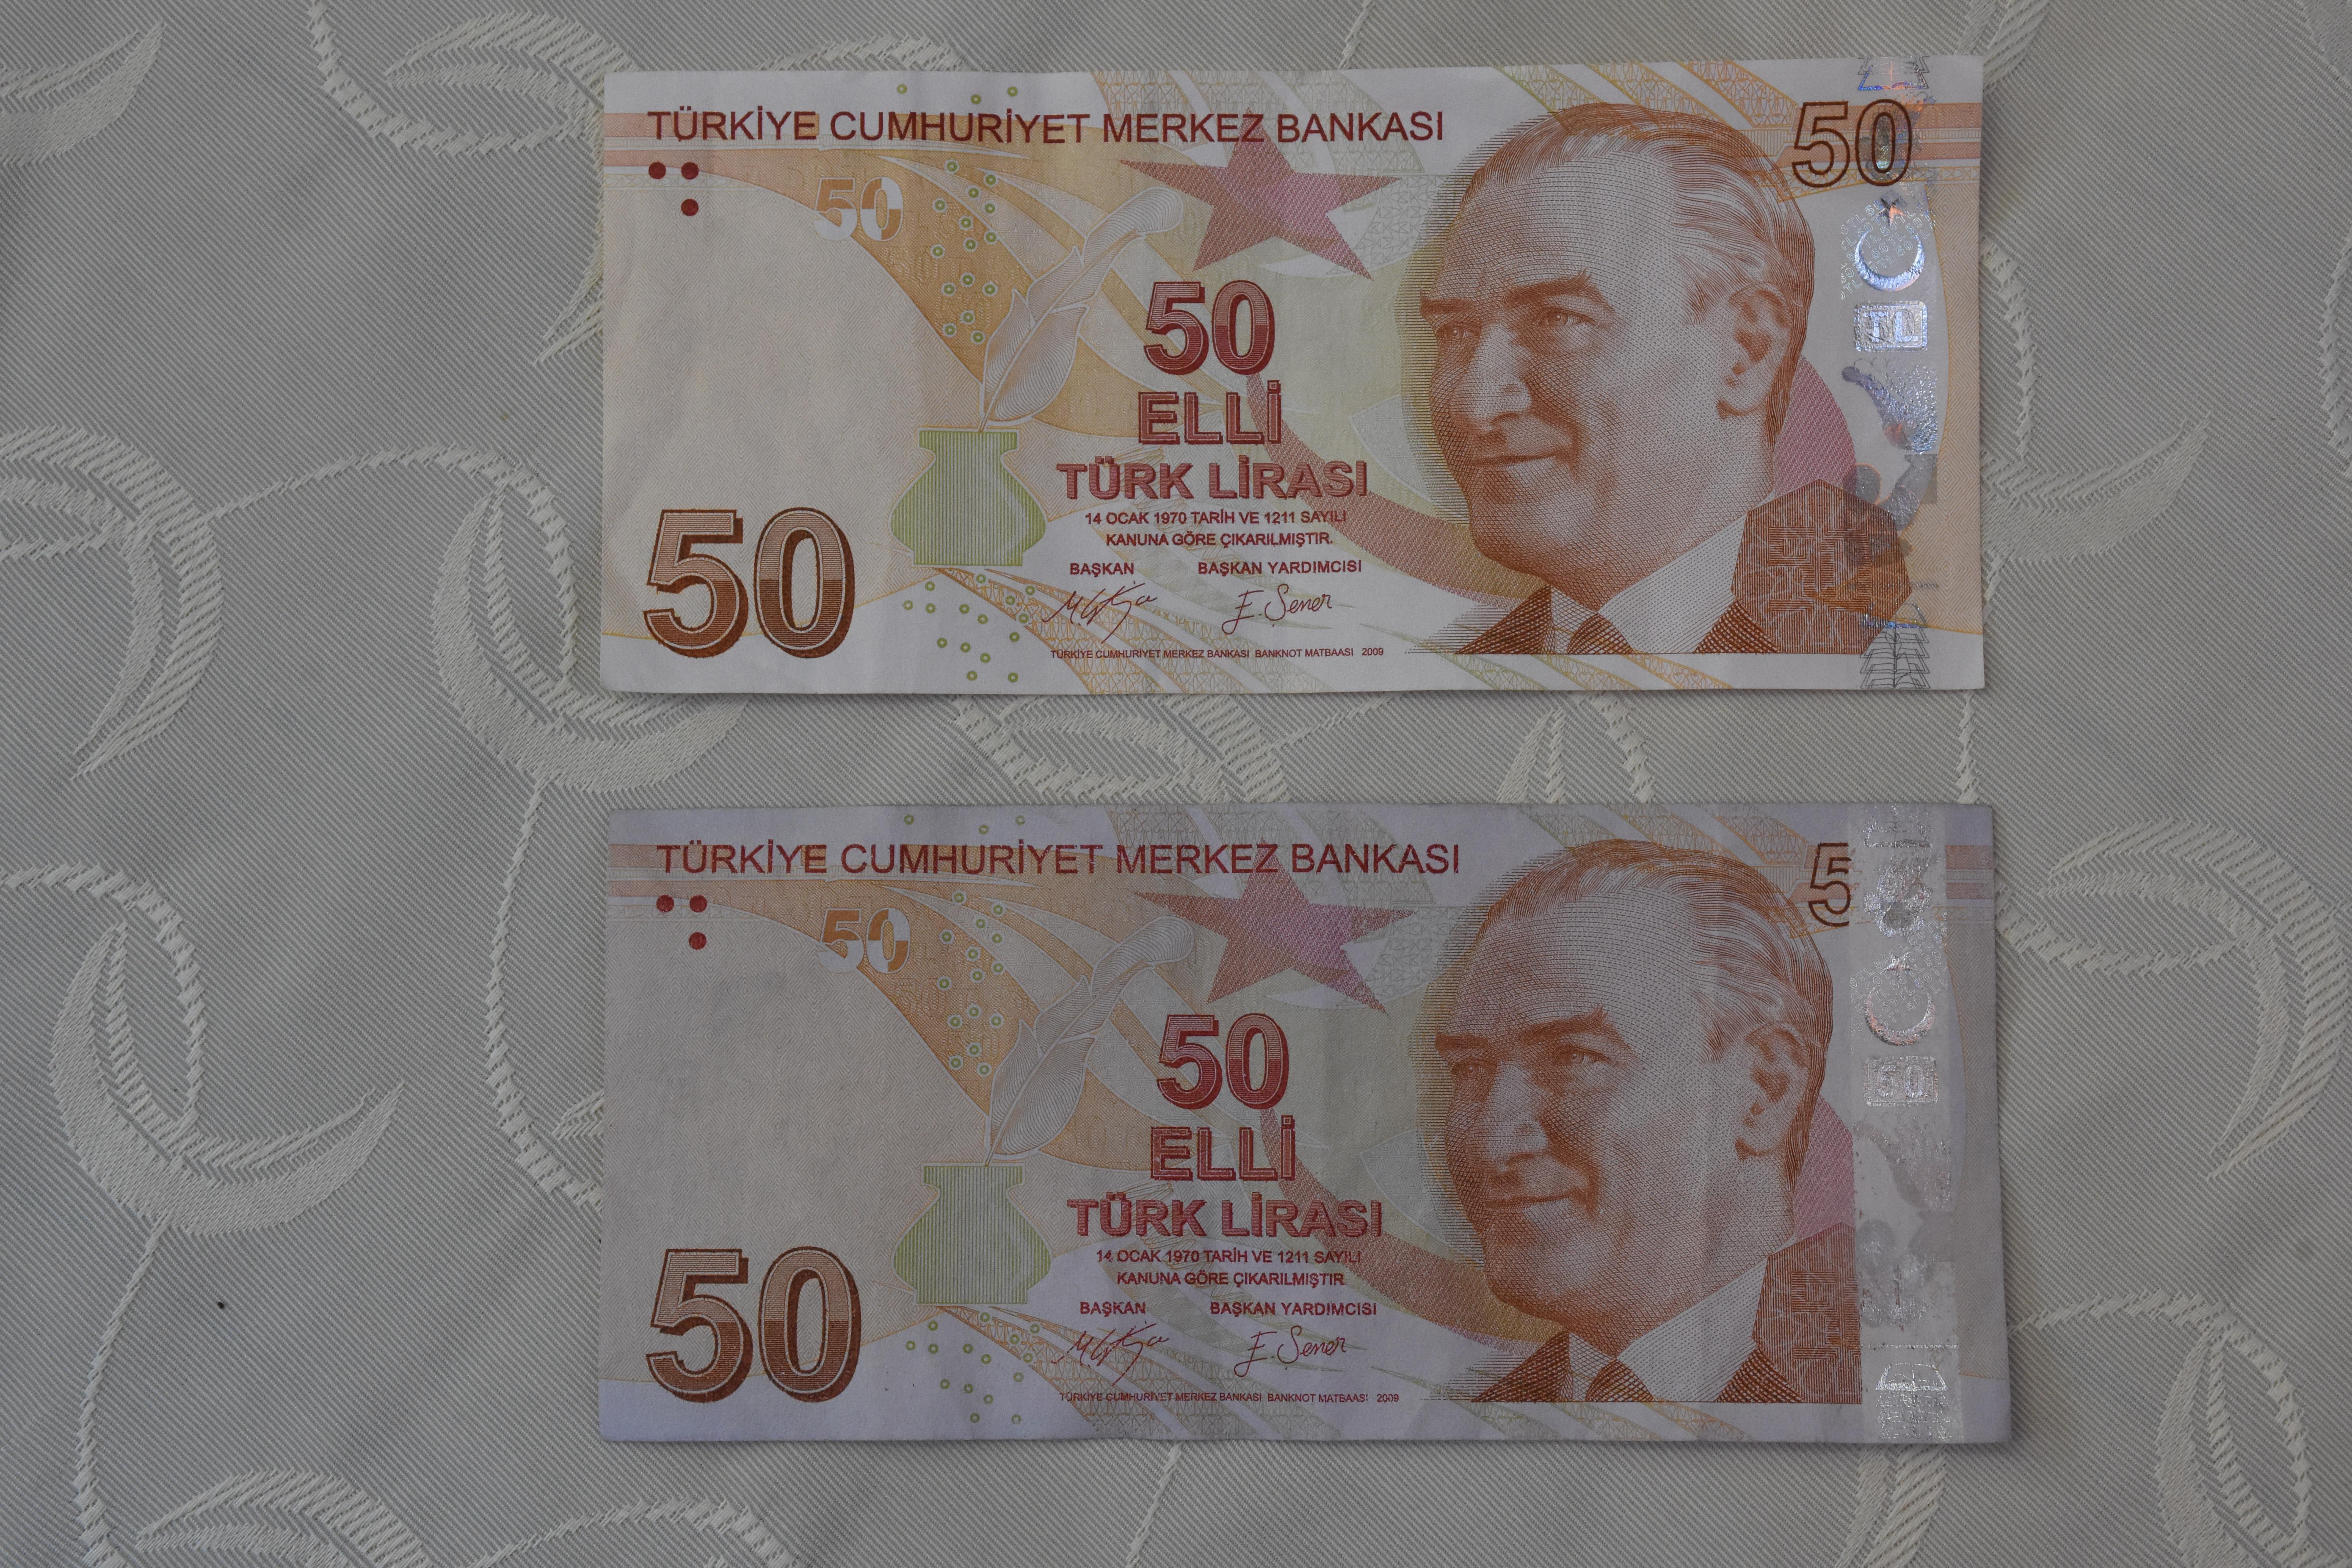 Elindeki 50 TLlik banknotla ilgili gerçeği öğrenen kadın tekliflere açık